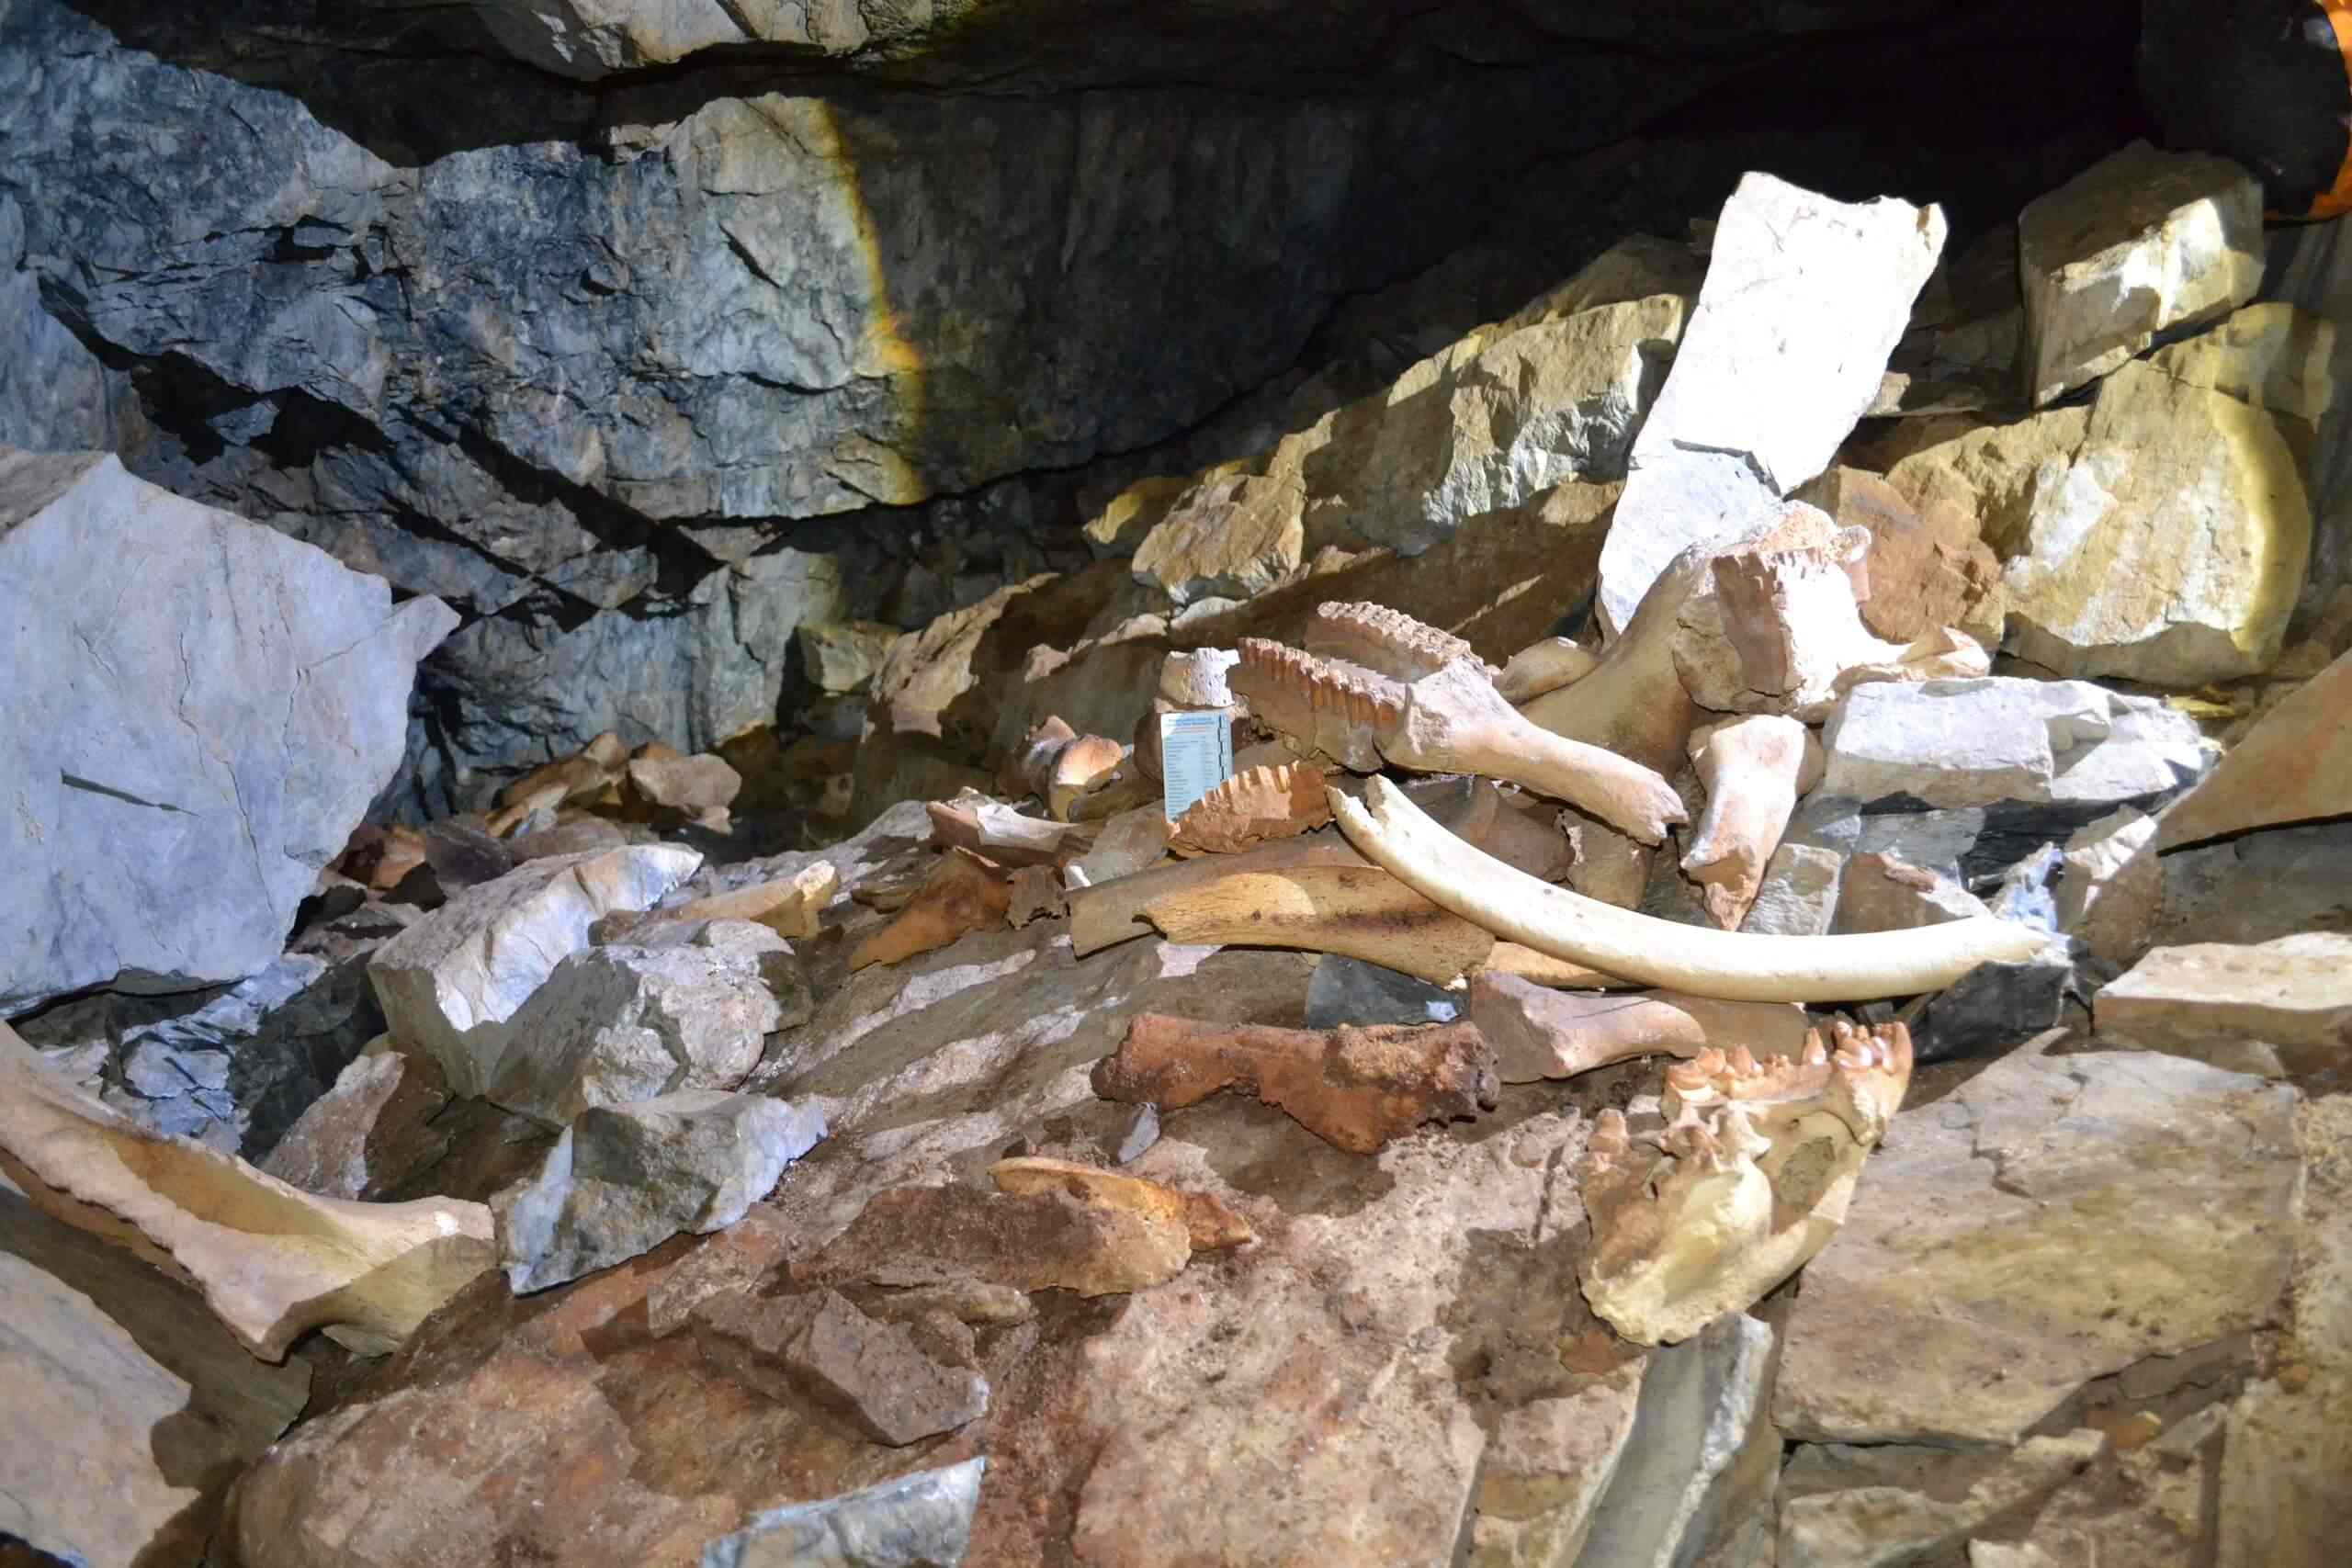 В пещере были обнаружены кости мамонтов, носорогов, шерстистых бизонов, яков, оленей, газелей и многих других животных. Изображение предоставлено: Институт геологии и минералогии им. В.С. Соболева